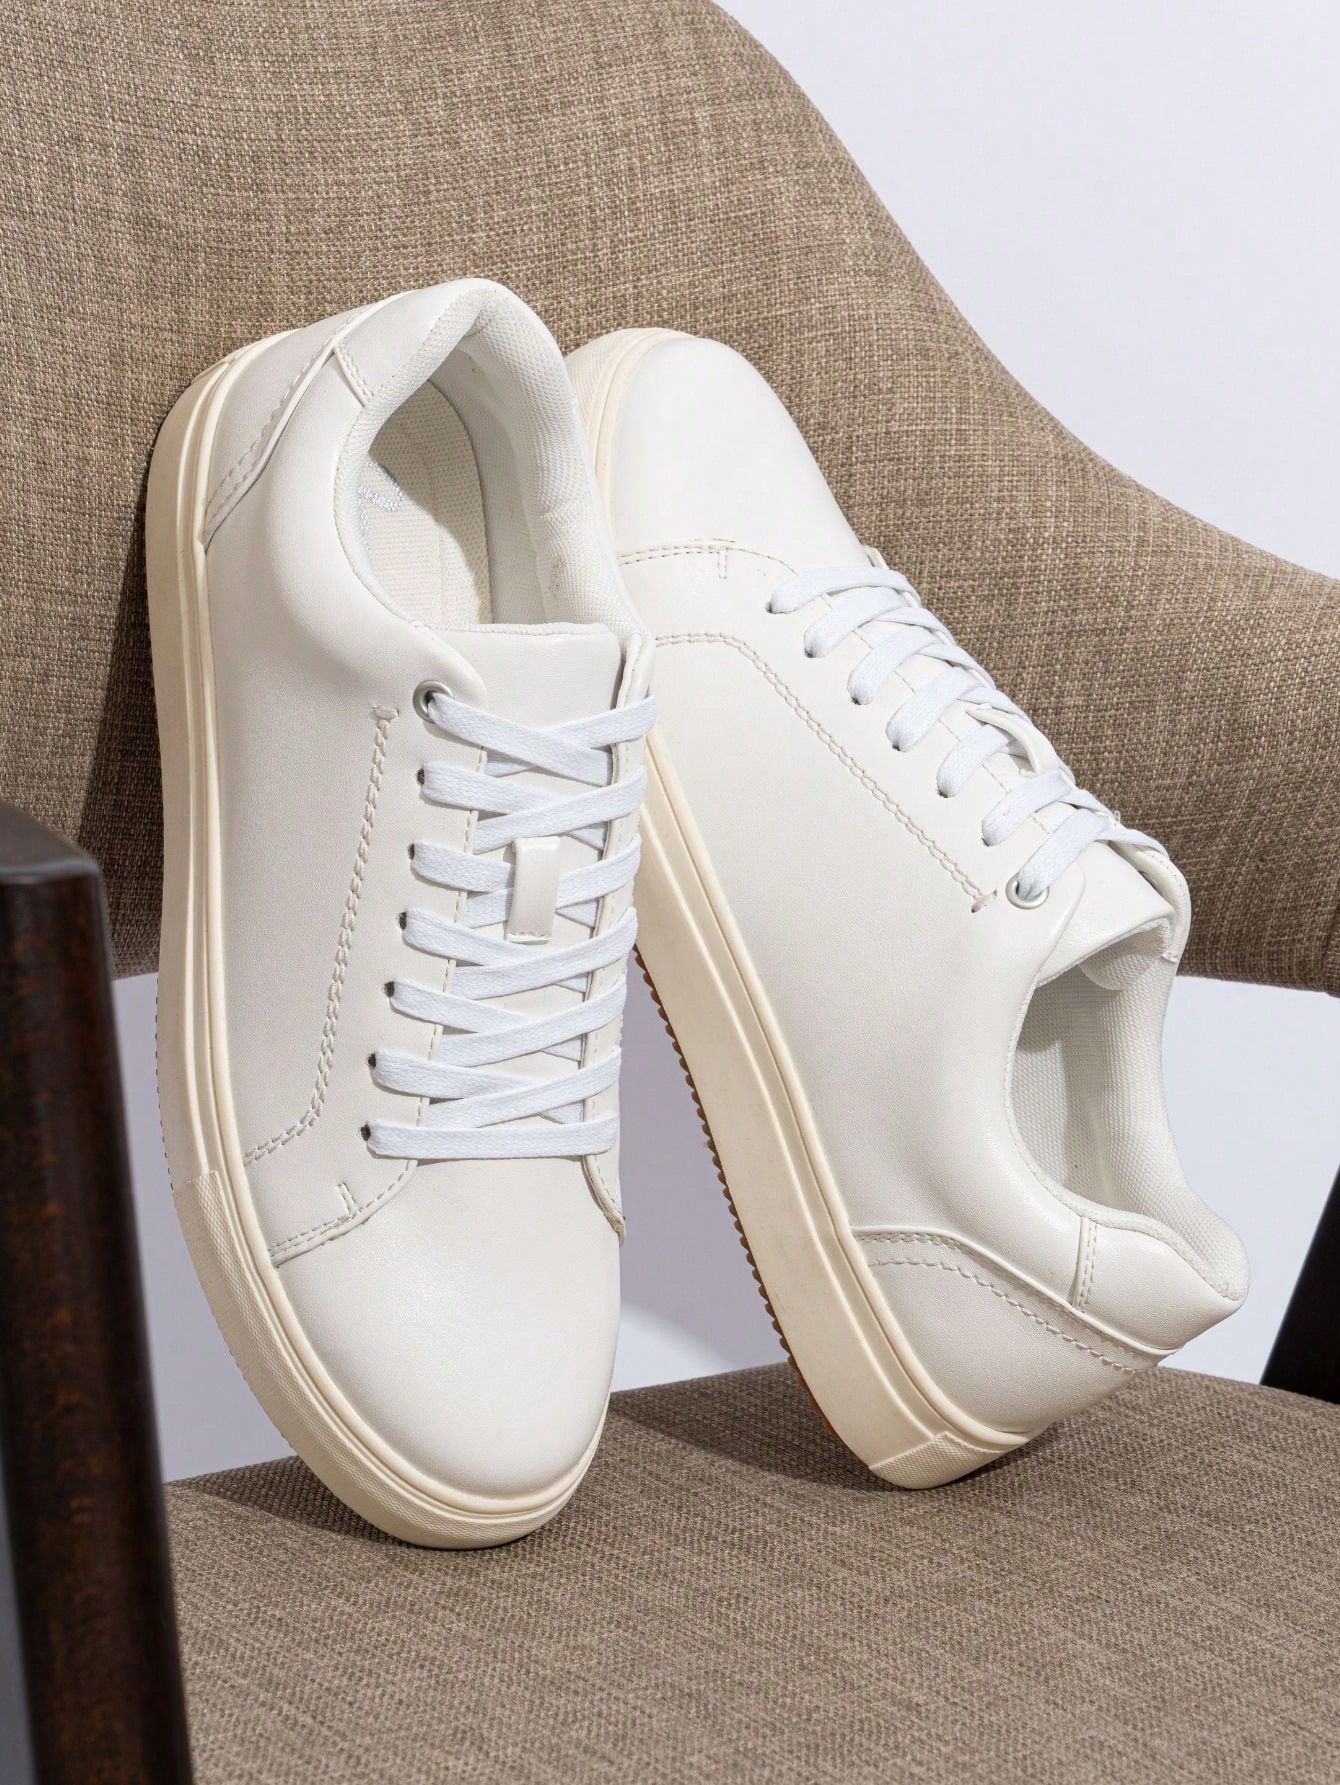 SHOESMALL Мужская повседневная обувь Белые мужские модные кроссовки Деловые классические кроссовки Обувь для скейтбординга, amy5126-белый